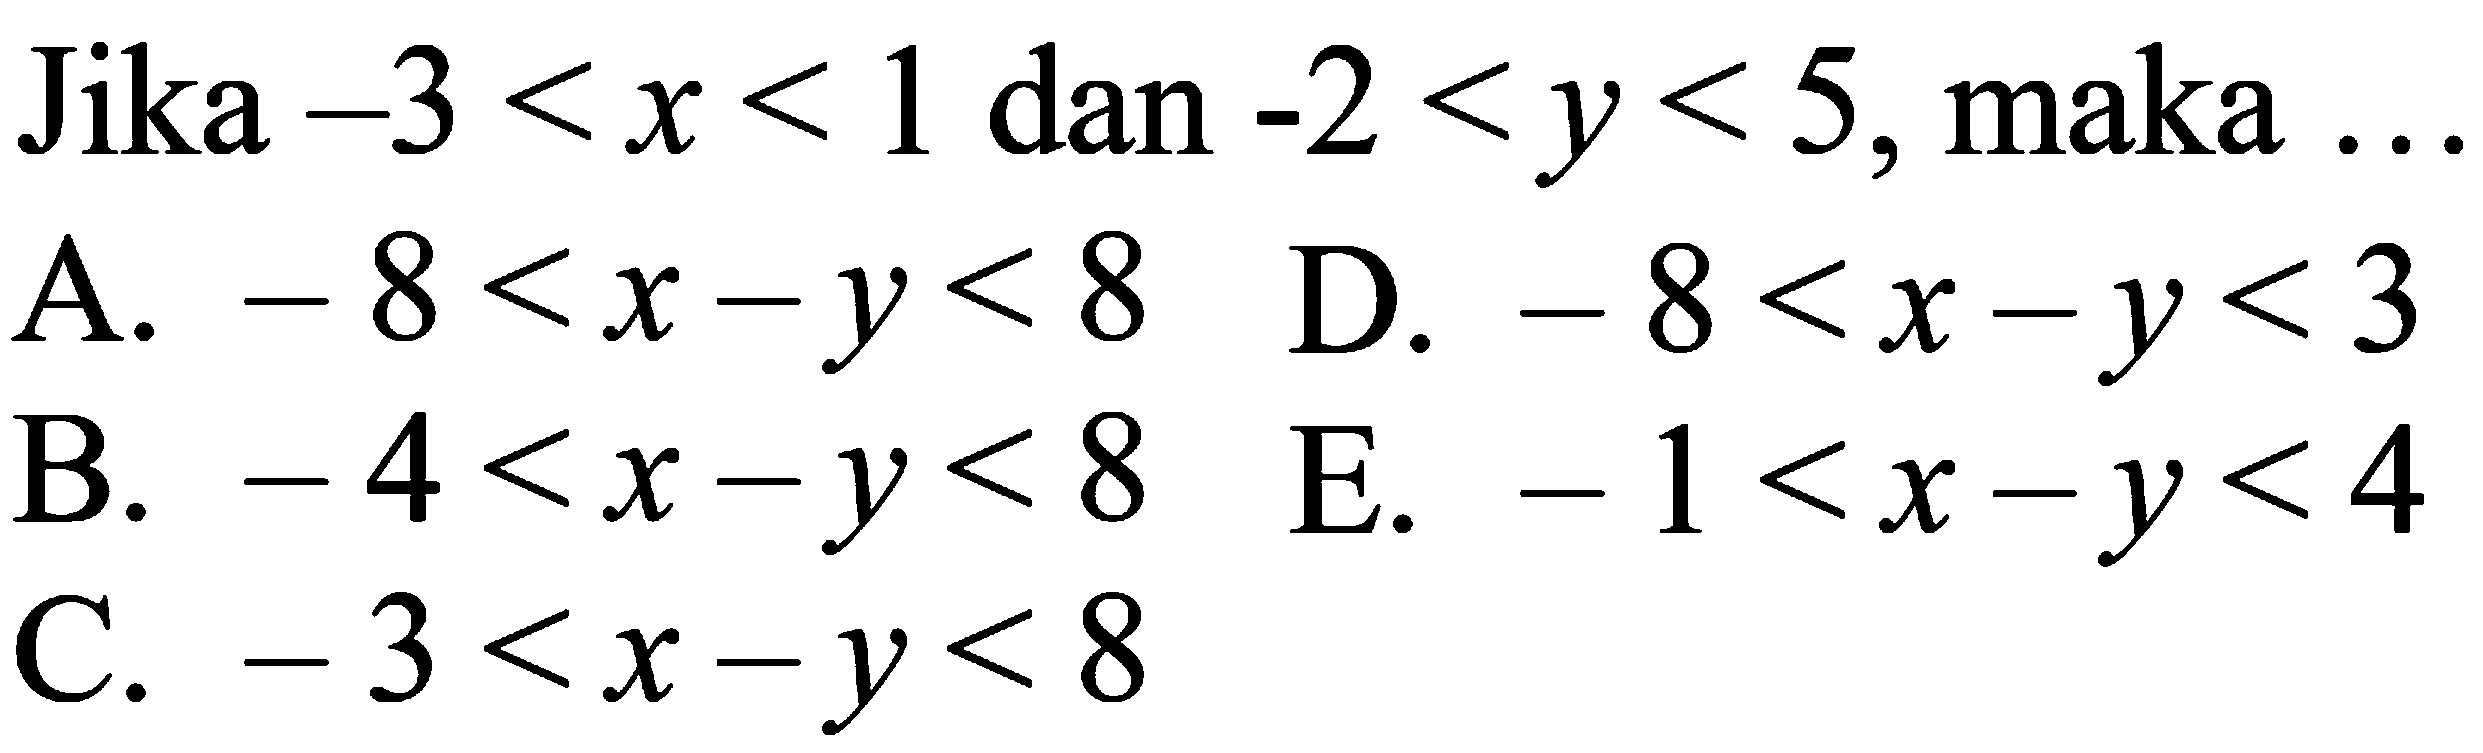 Jika -3<x<1 dan -2<y<5, maka ... A. -8<x-y<8 D. -8<x-y<3 B. -4<x-y <8 E. -1<x-y<4 C. -3<x-y<8